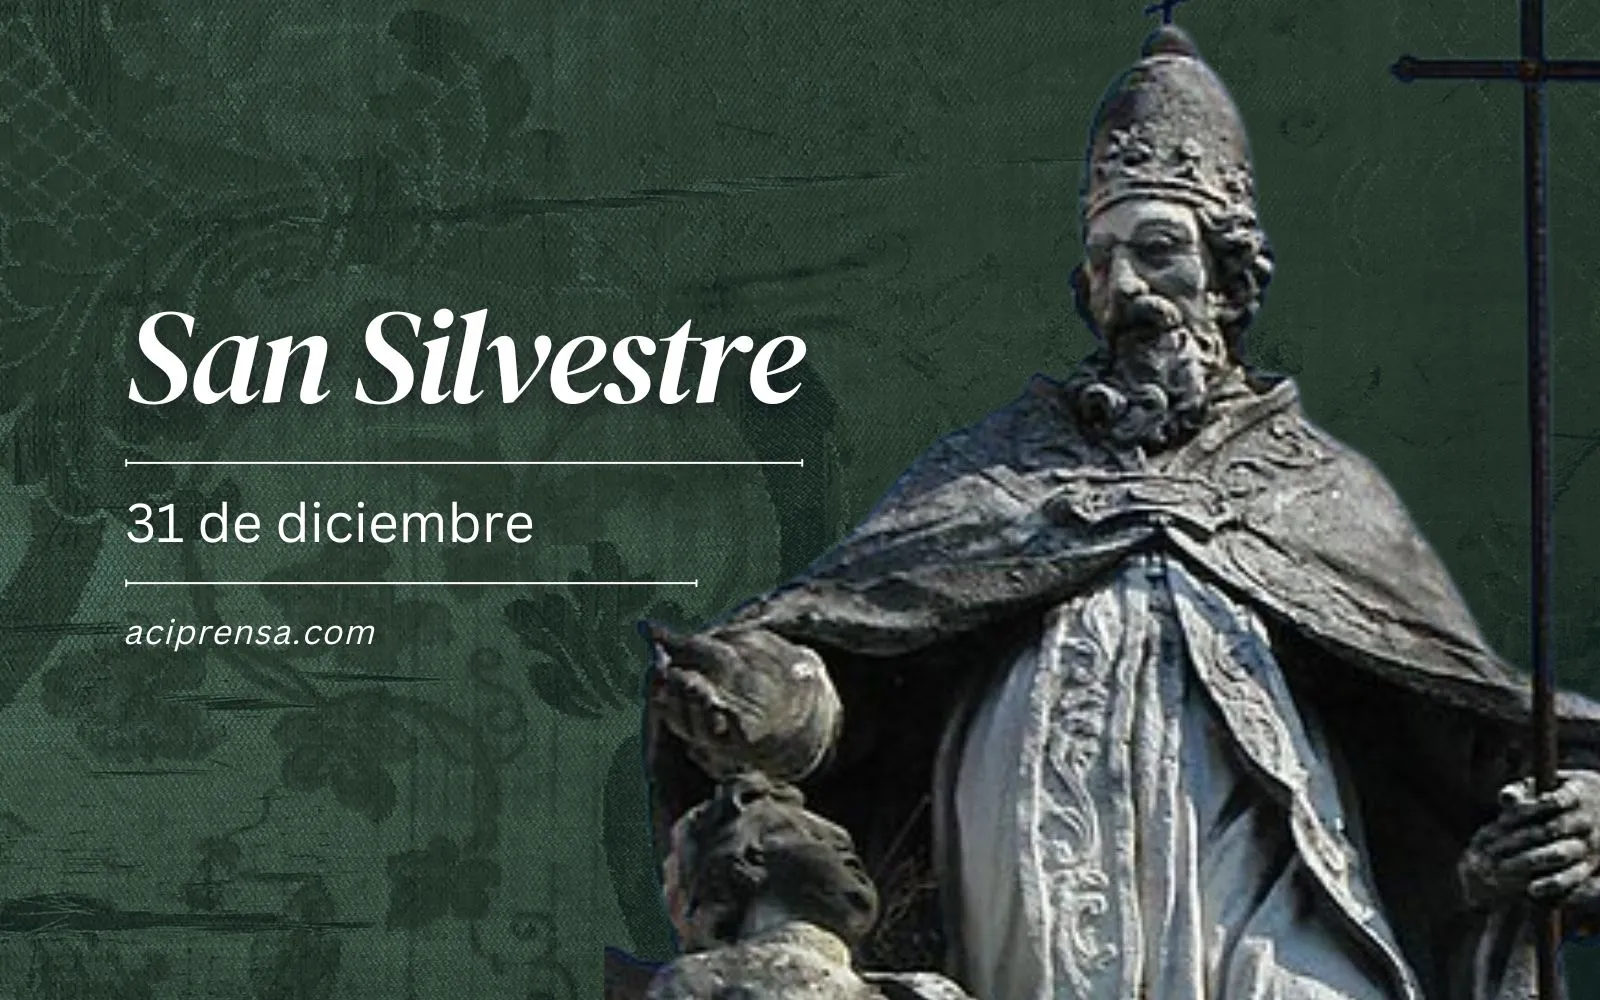 El último día del año recordamos a San Silvestre, el primer pontífice “administrador”, San Silvestre (31 de diciembre de 2023)/ACI Prensa?w=200&h=150